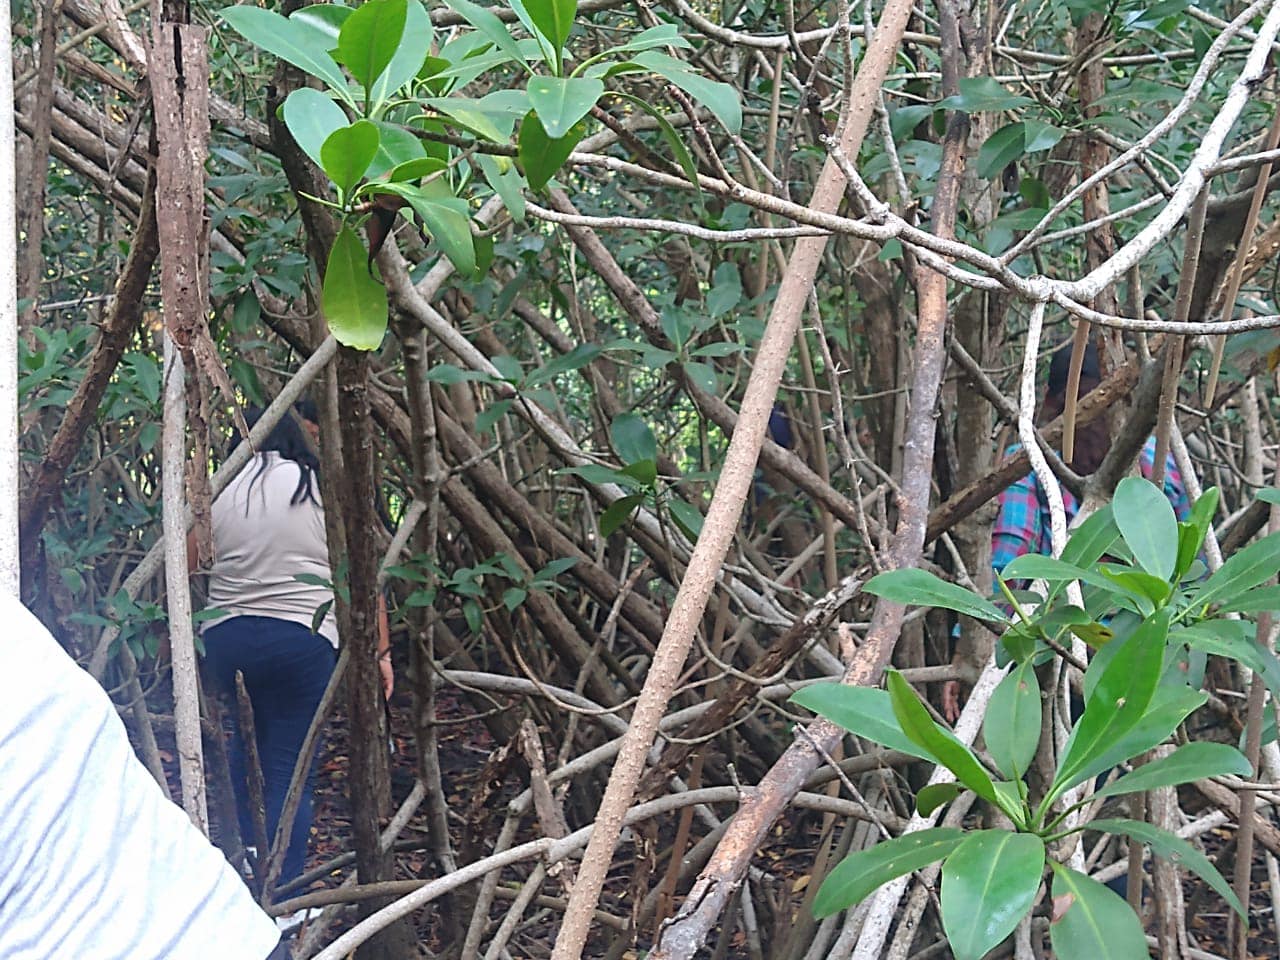 Limpieza en la zona de mangle